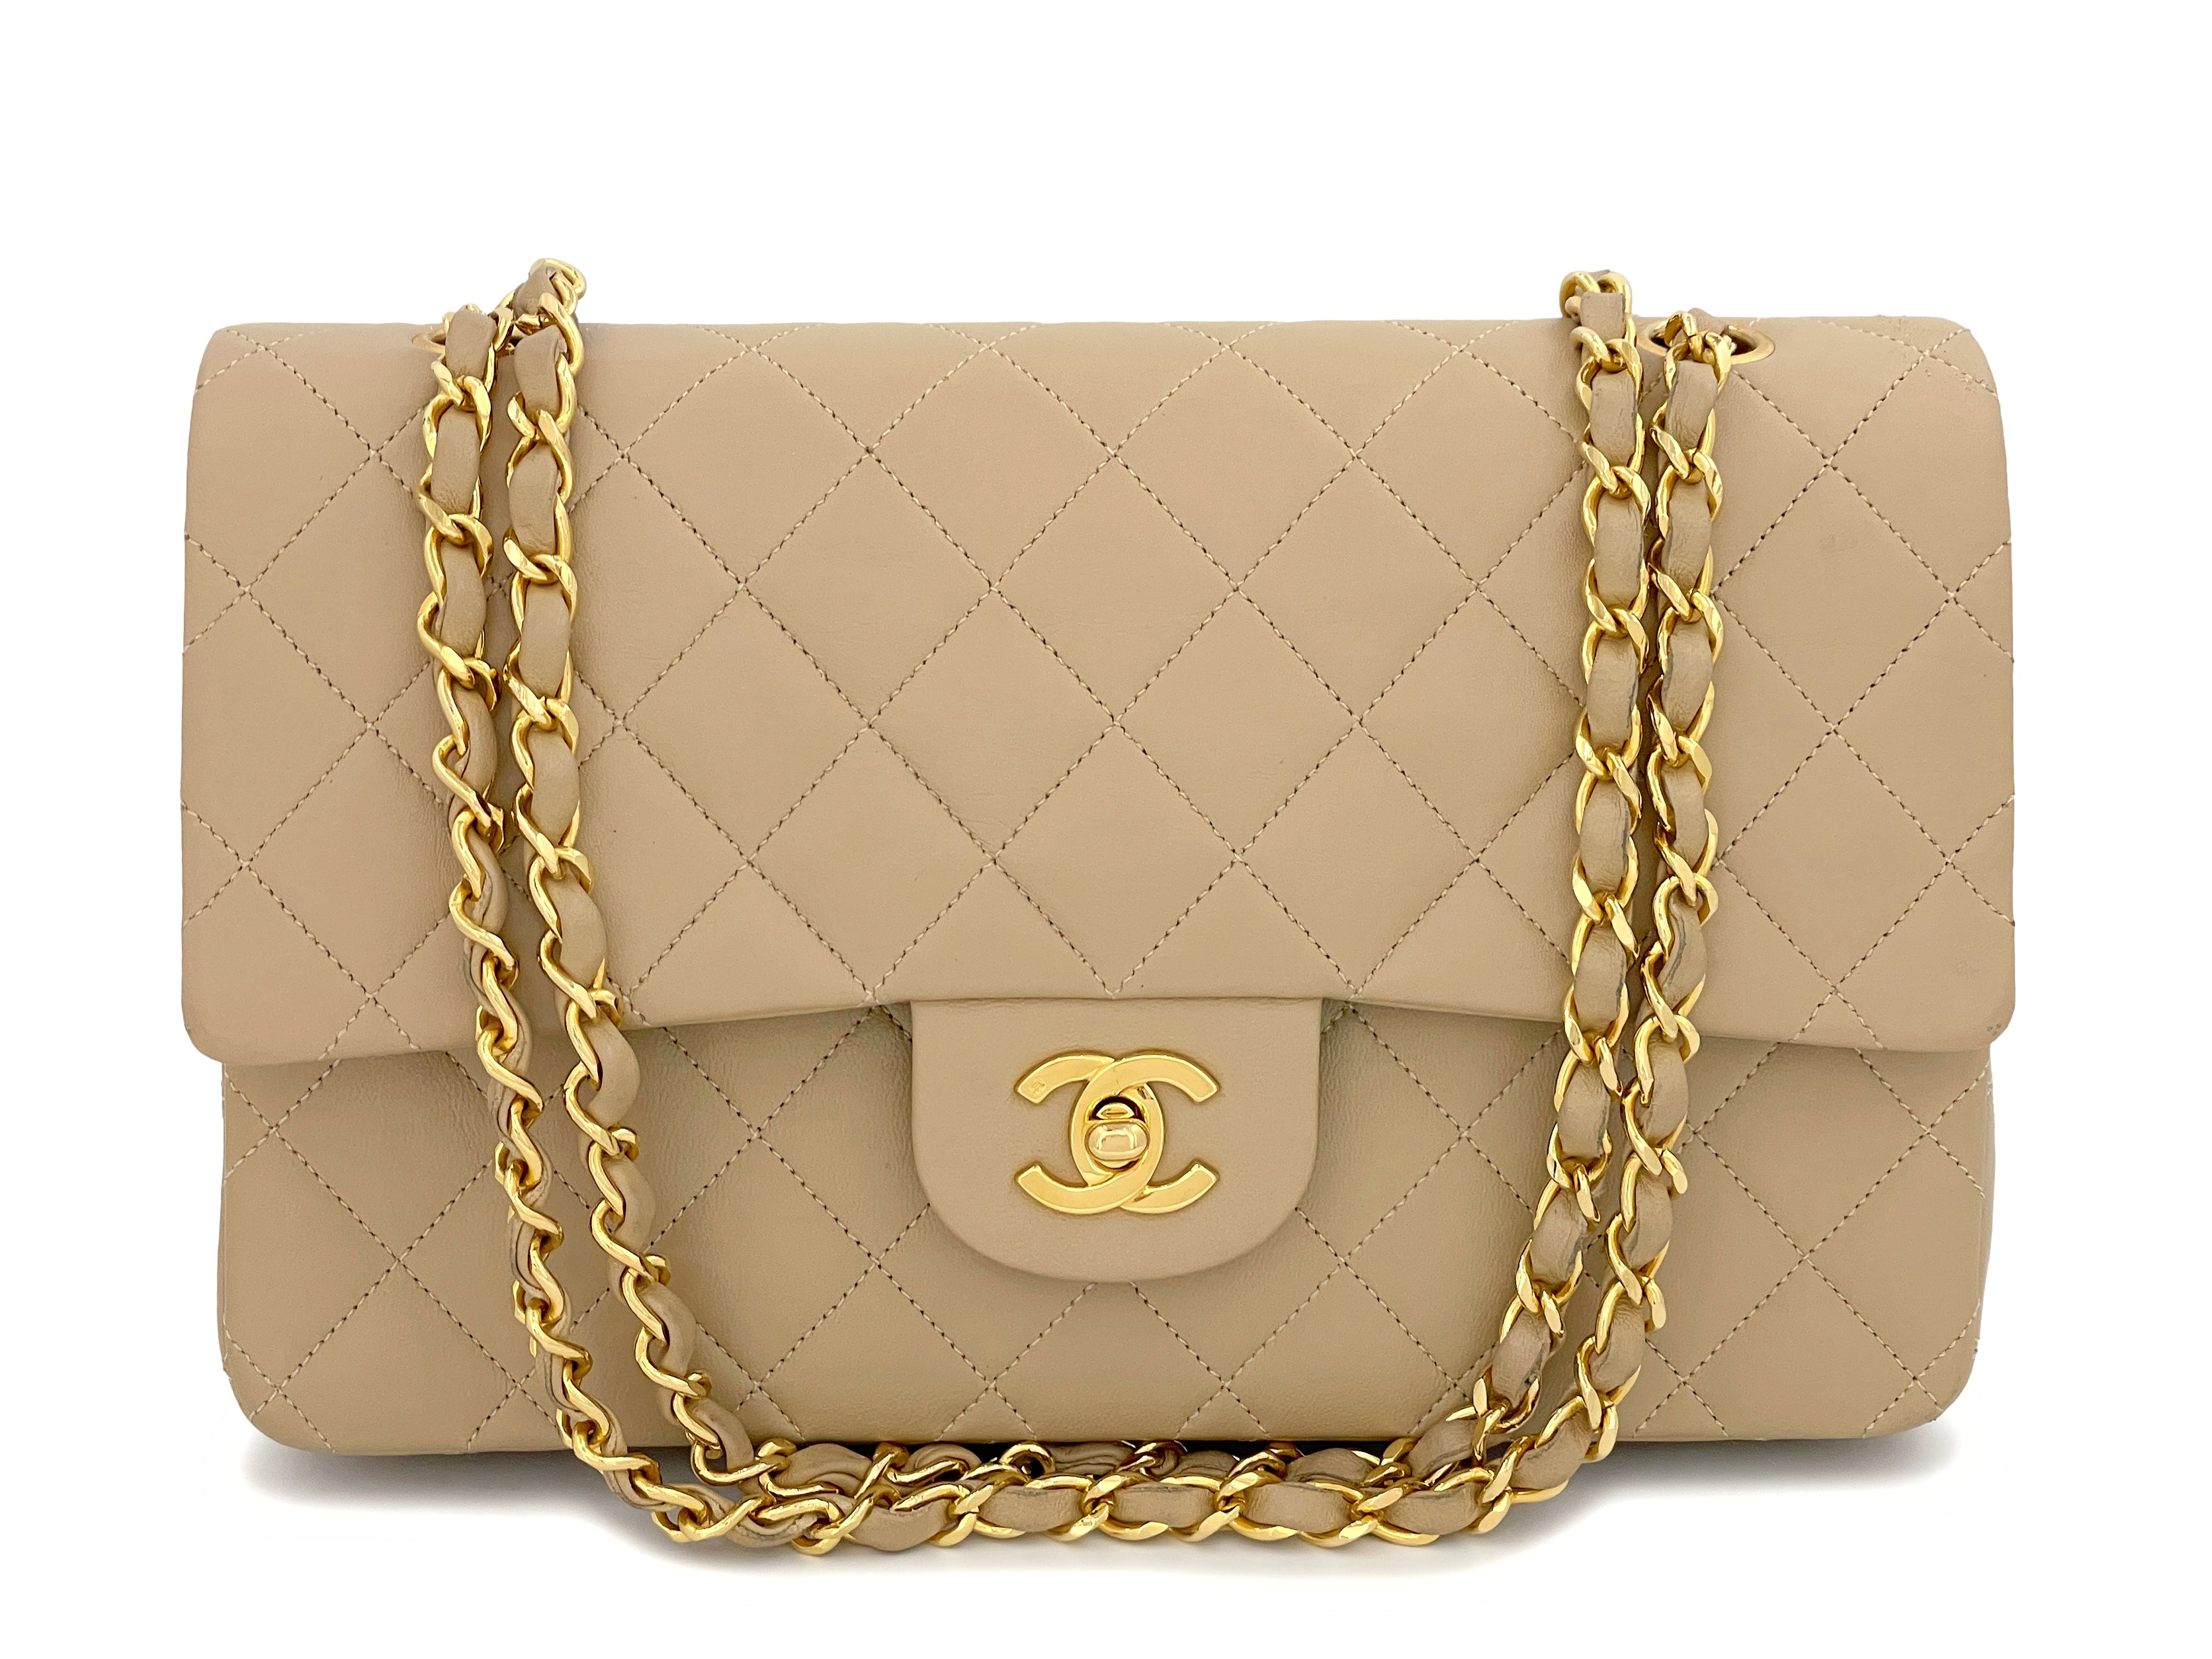 Pristine Chanel 1989 Vintage Beige Medium Classic Double Flap Bag